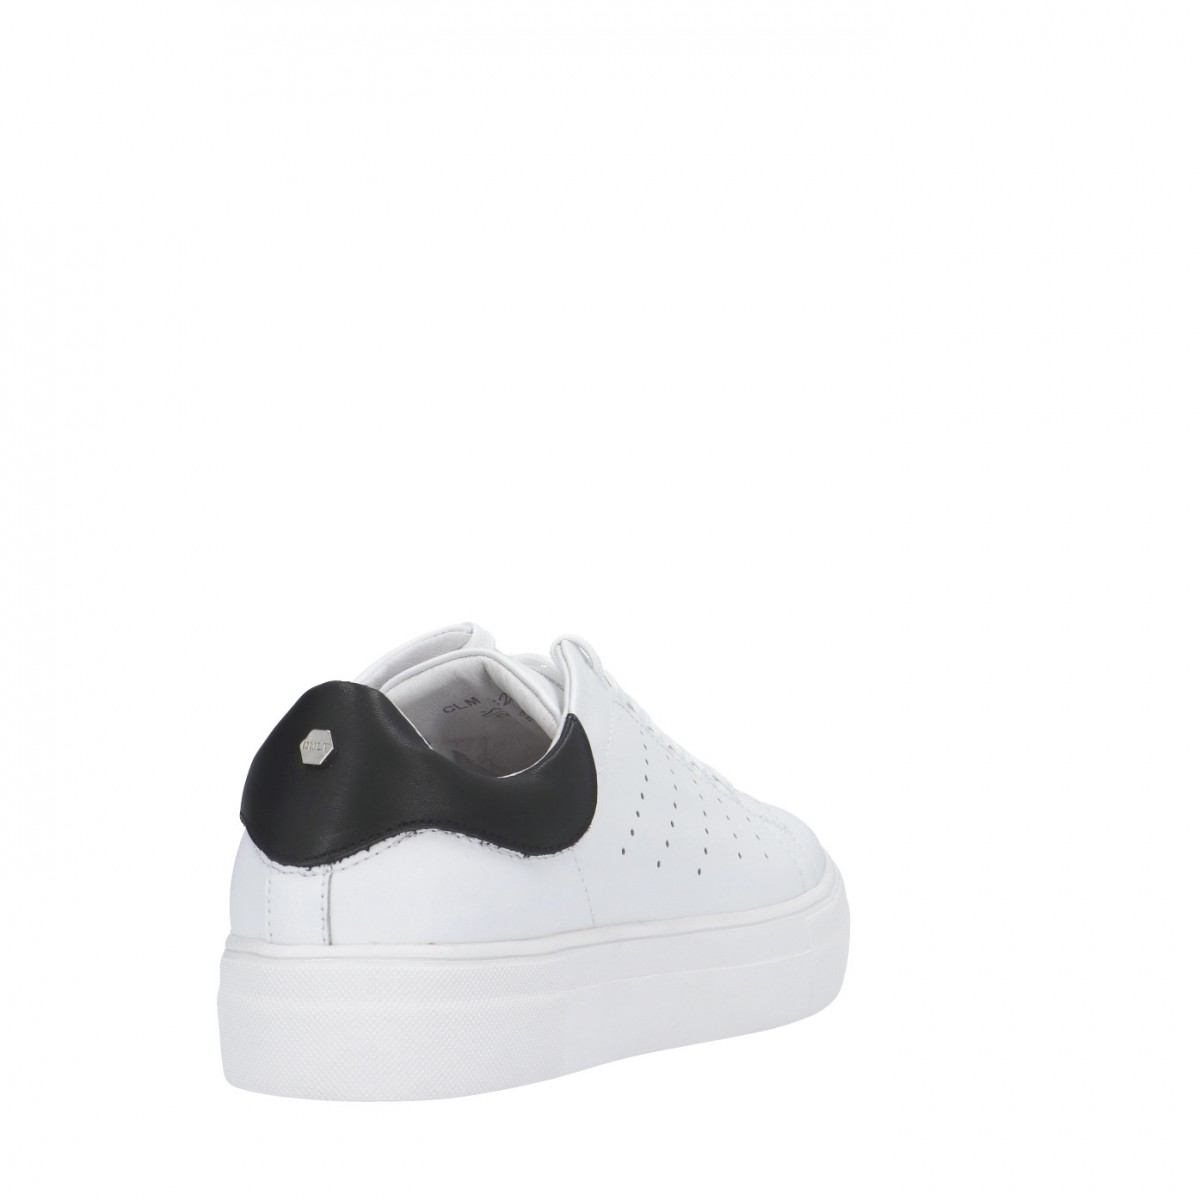 Cult Sneaker Bianco/nero Gomma CLM329100